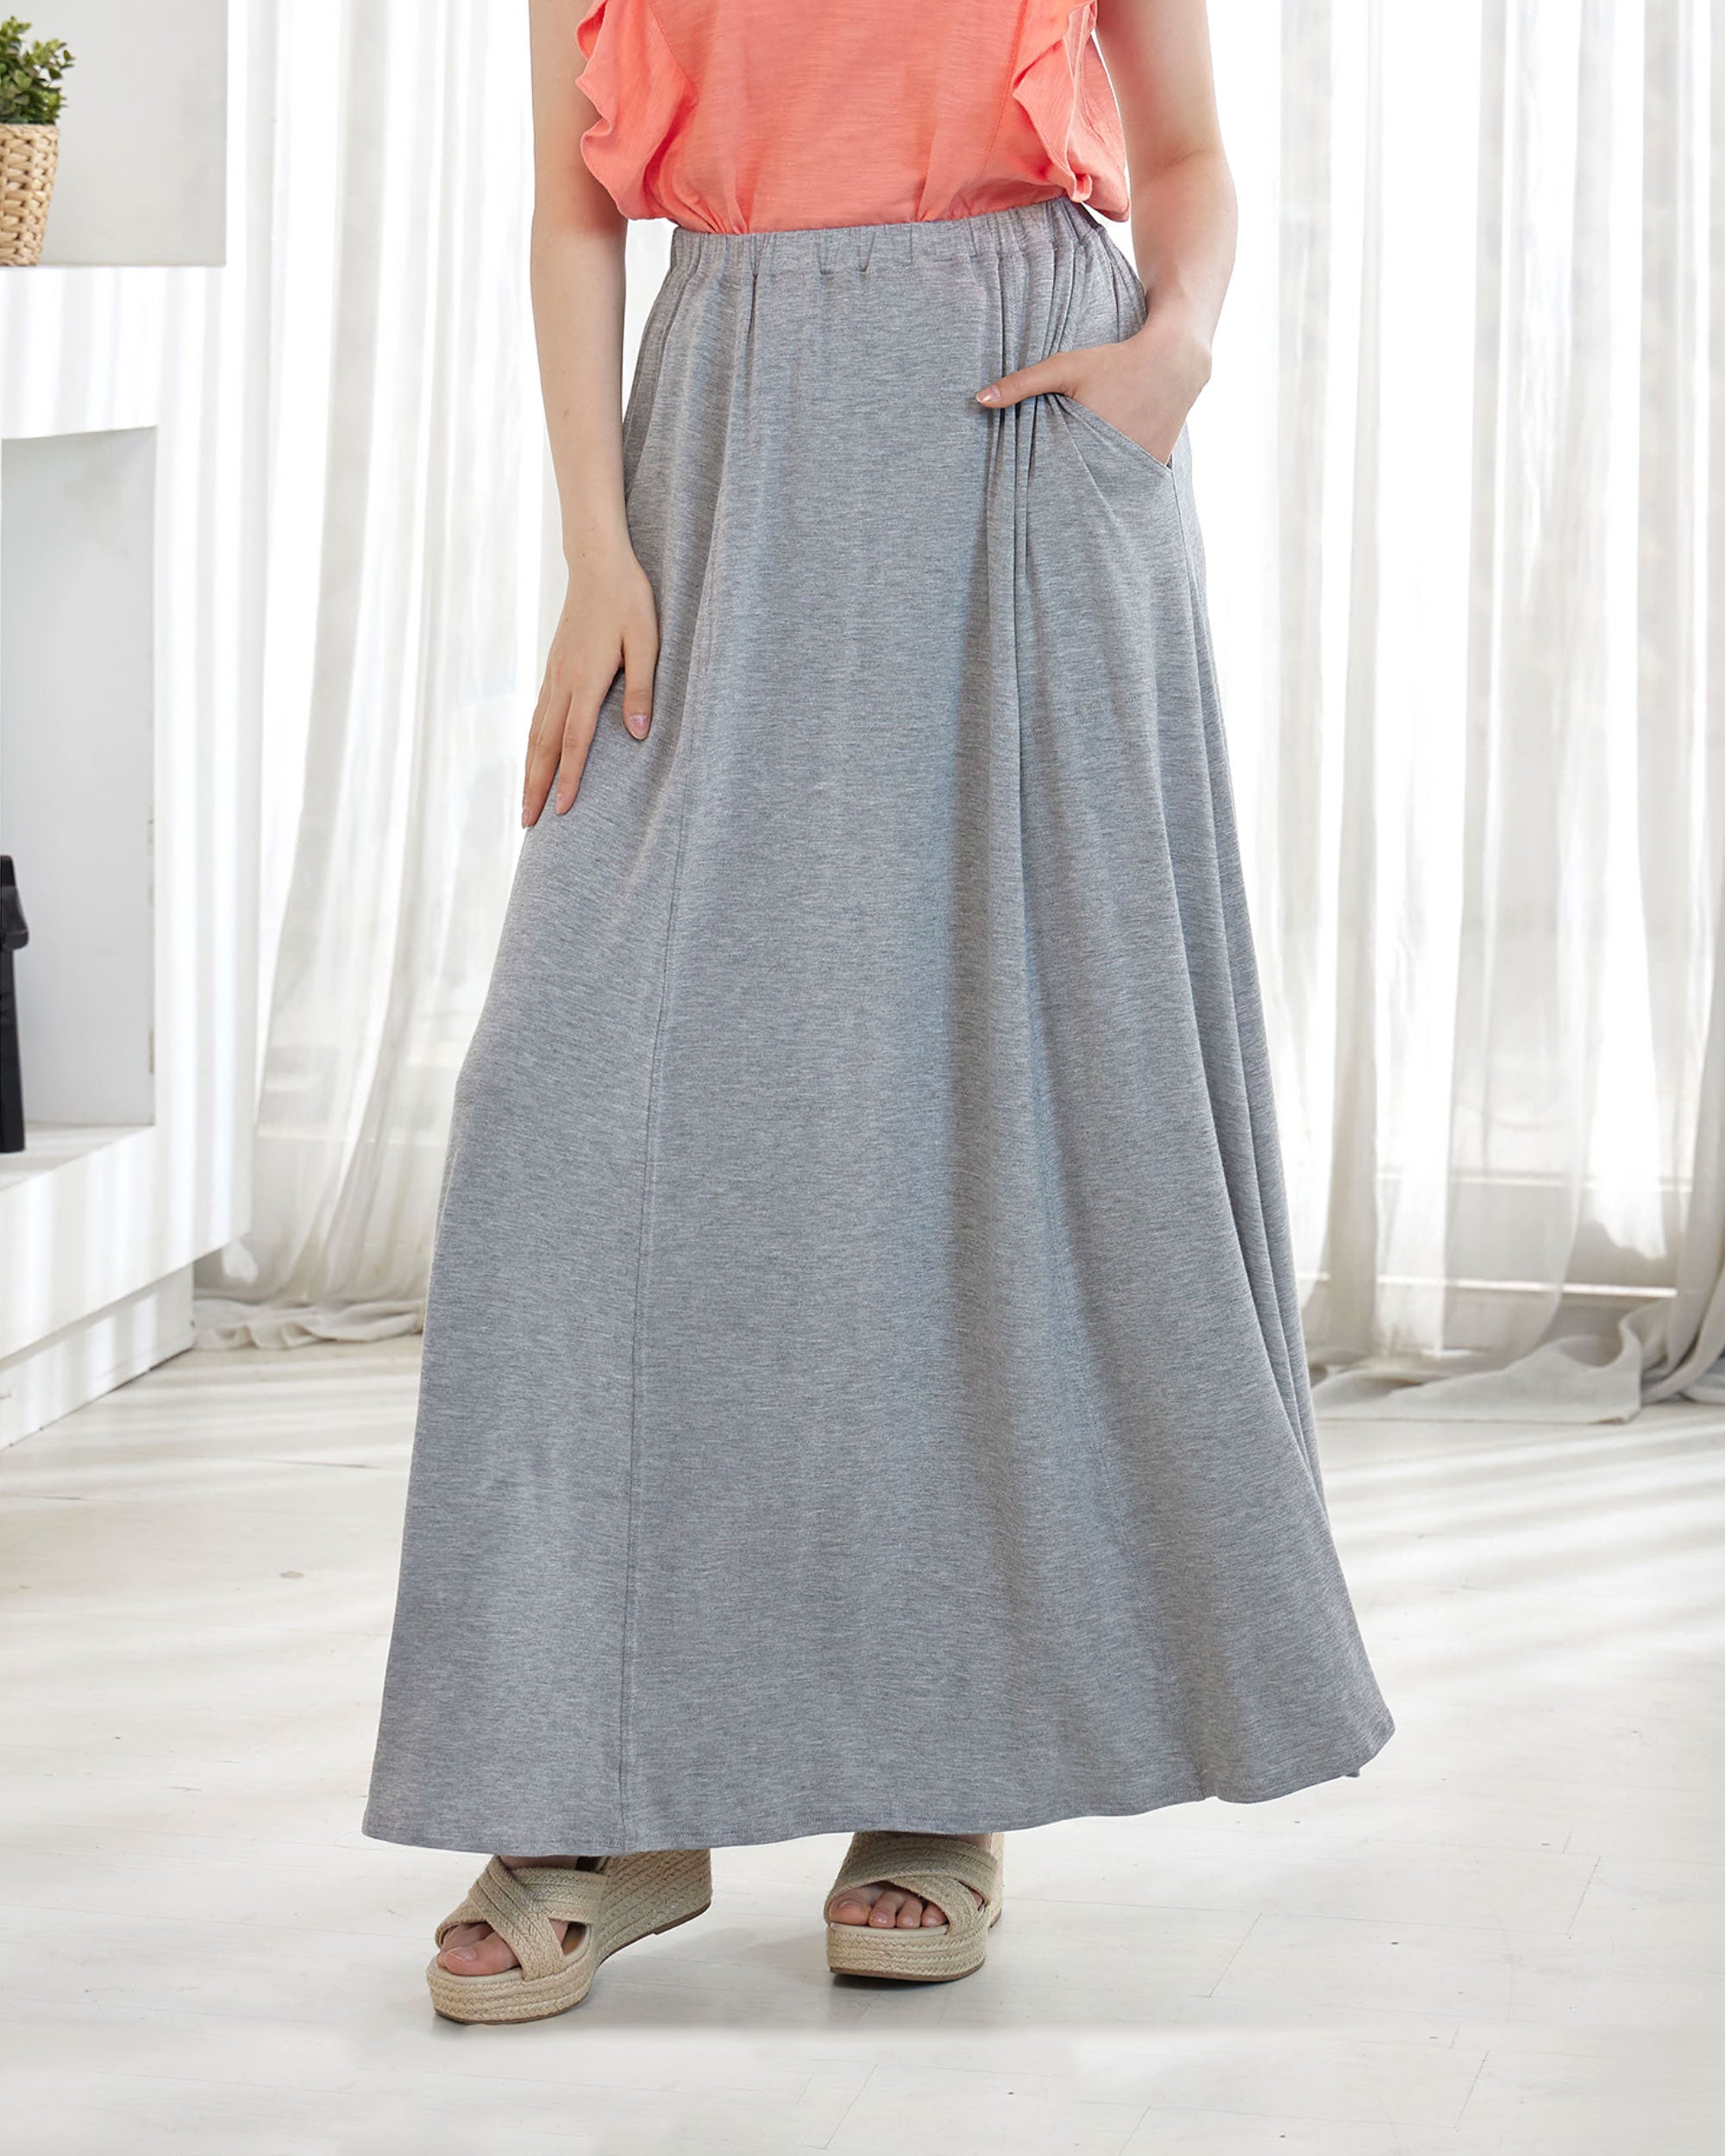 Heather Grey Maxi Skirt - Soft & Lightweight